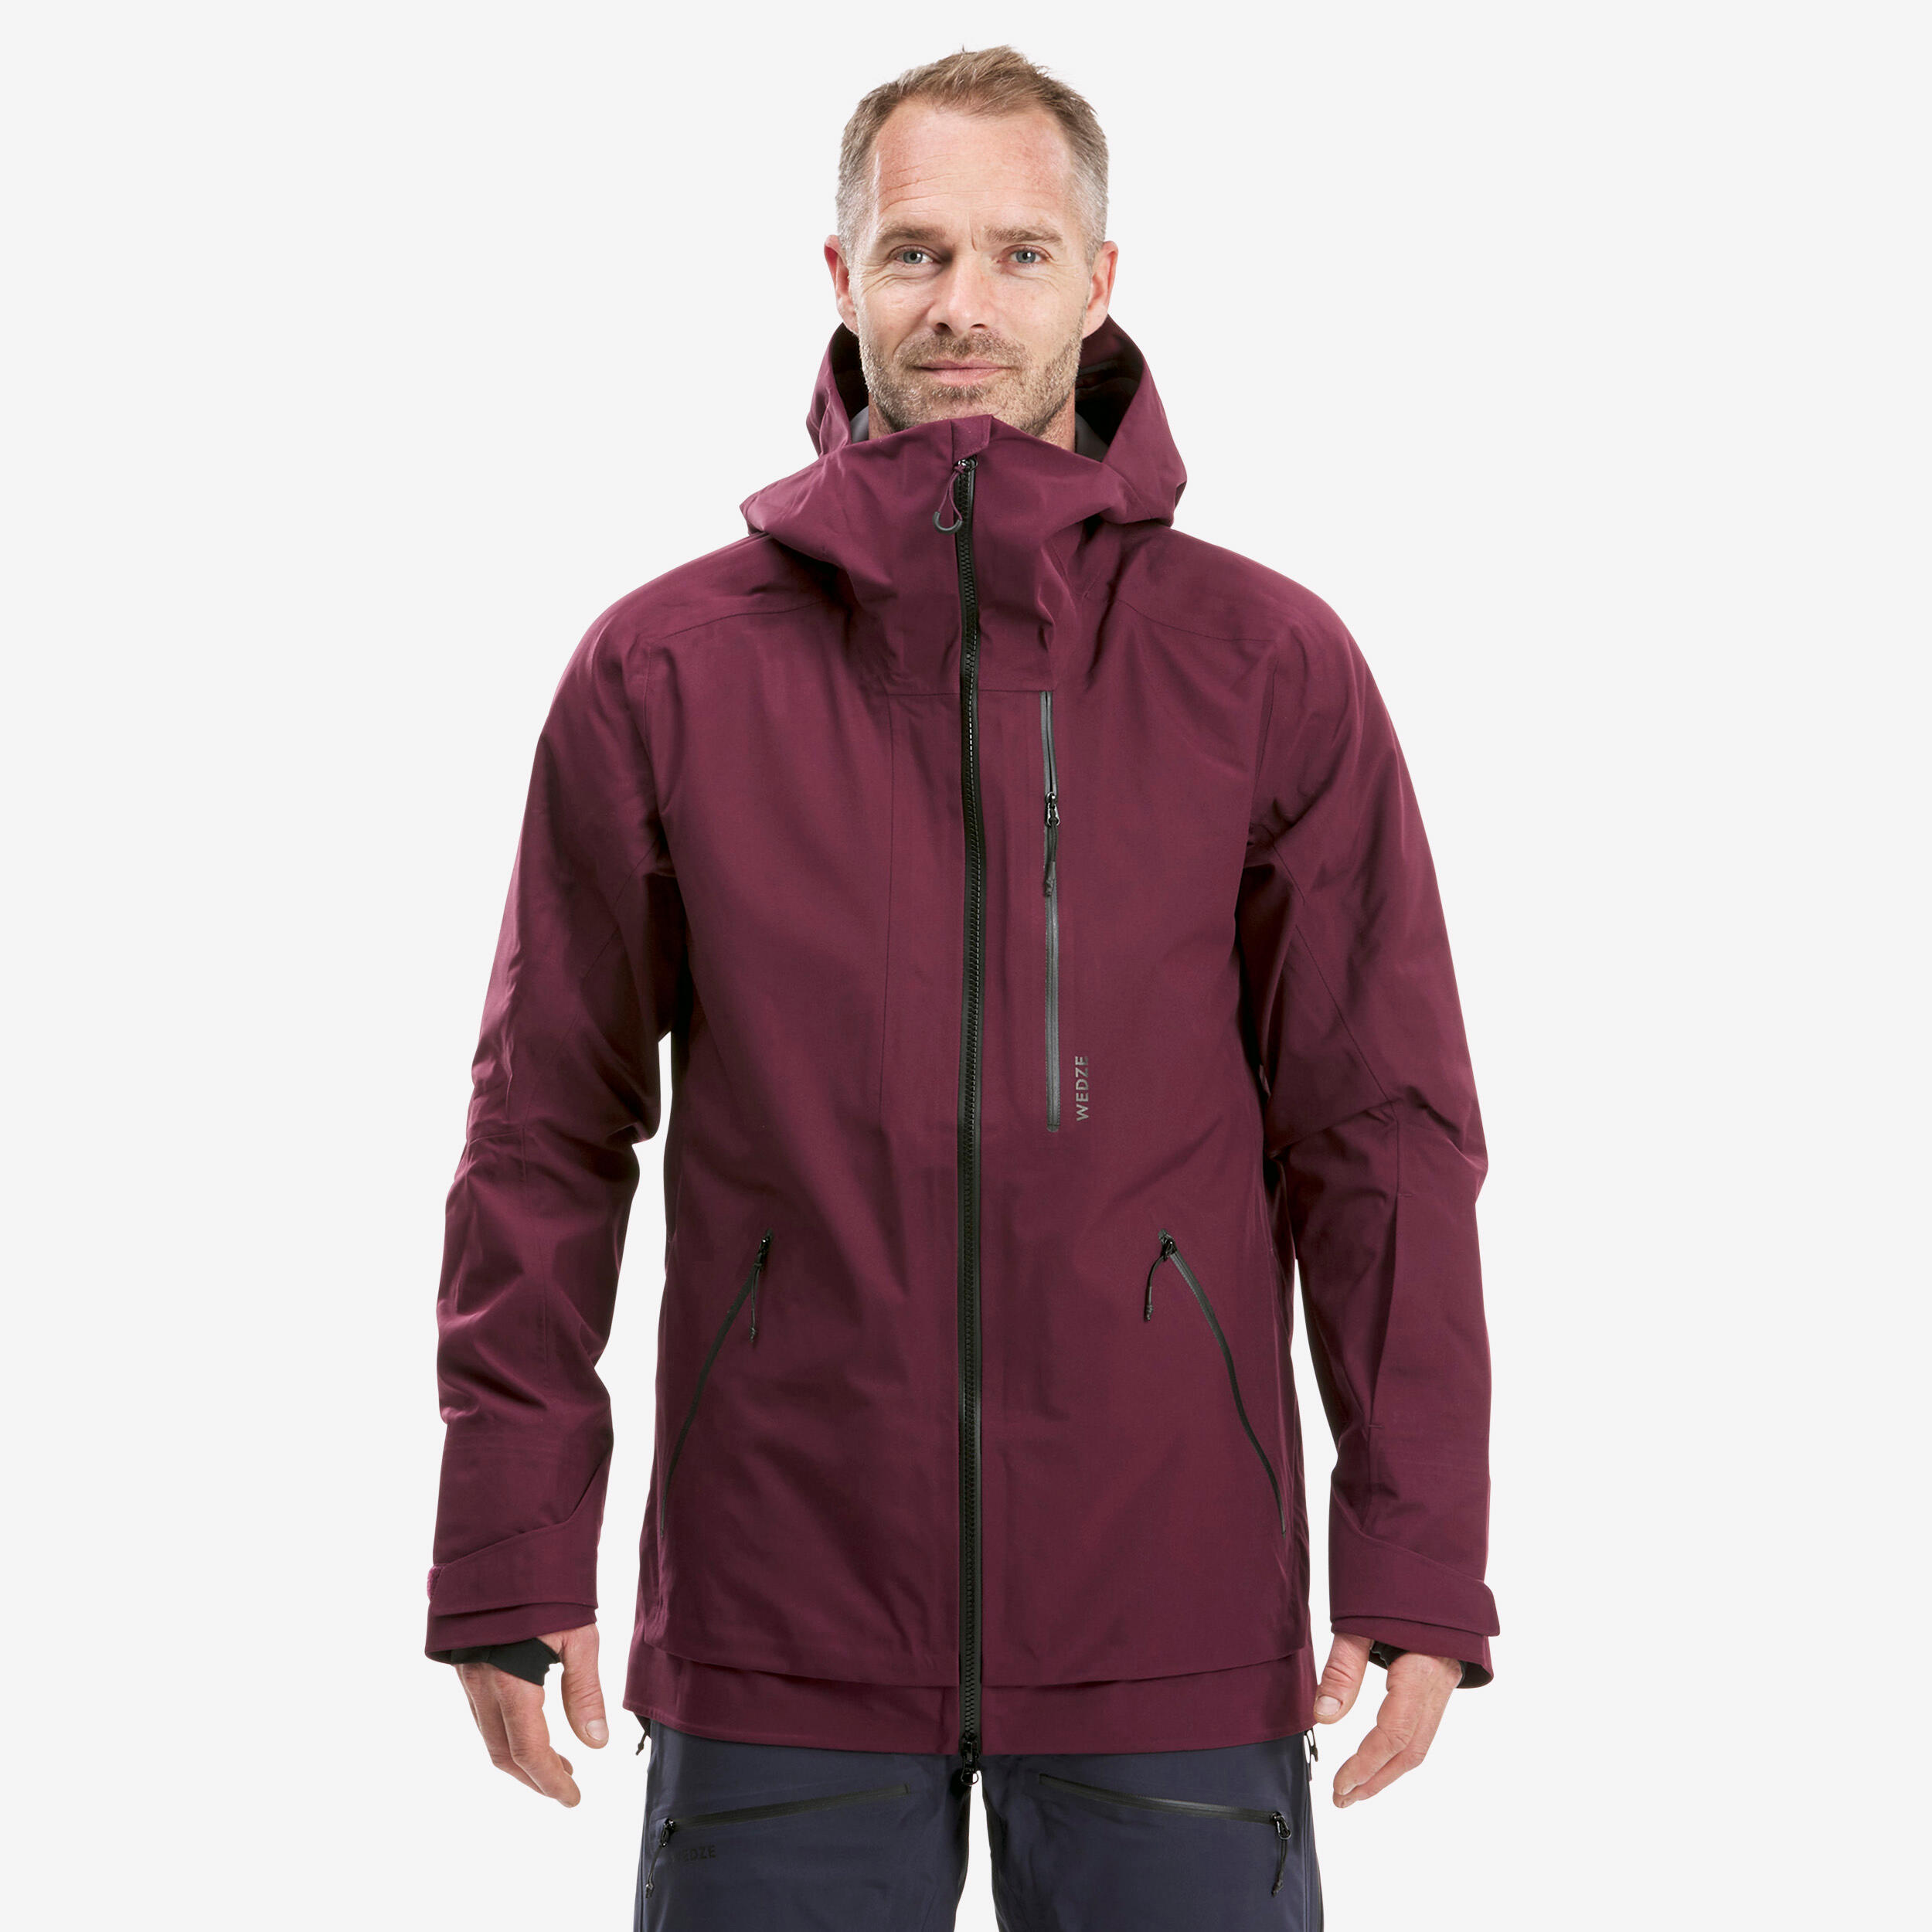 Men's Ski Jacket - FR500 - Bordeaux 1/15